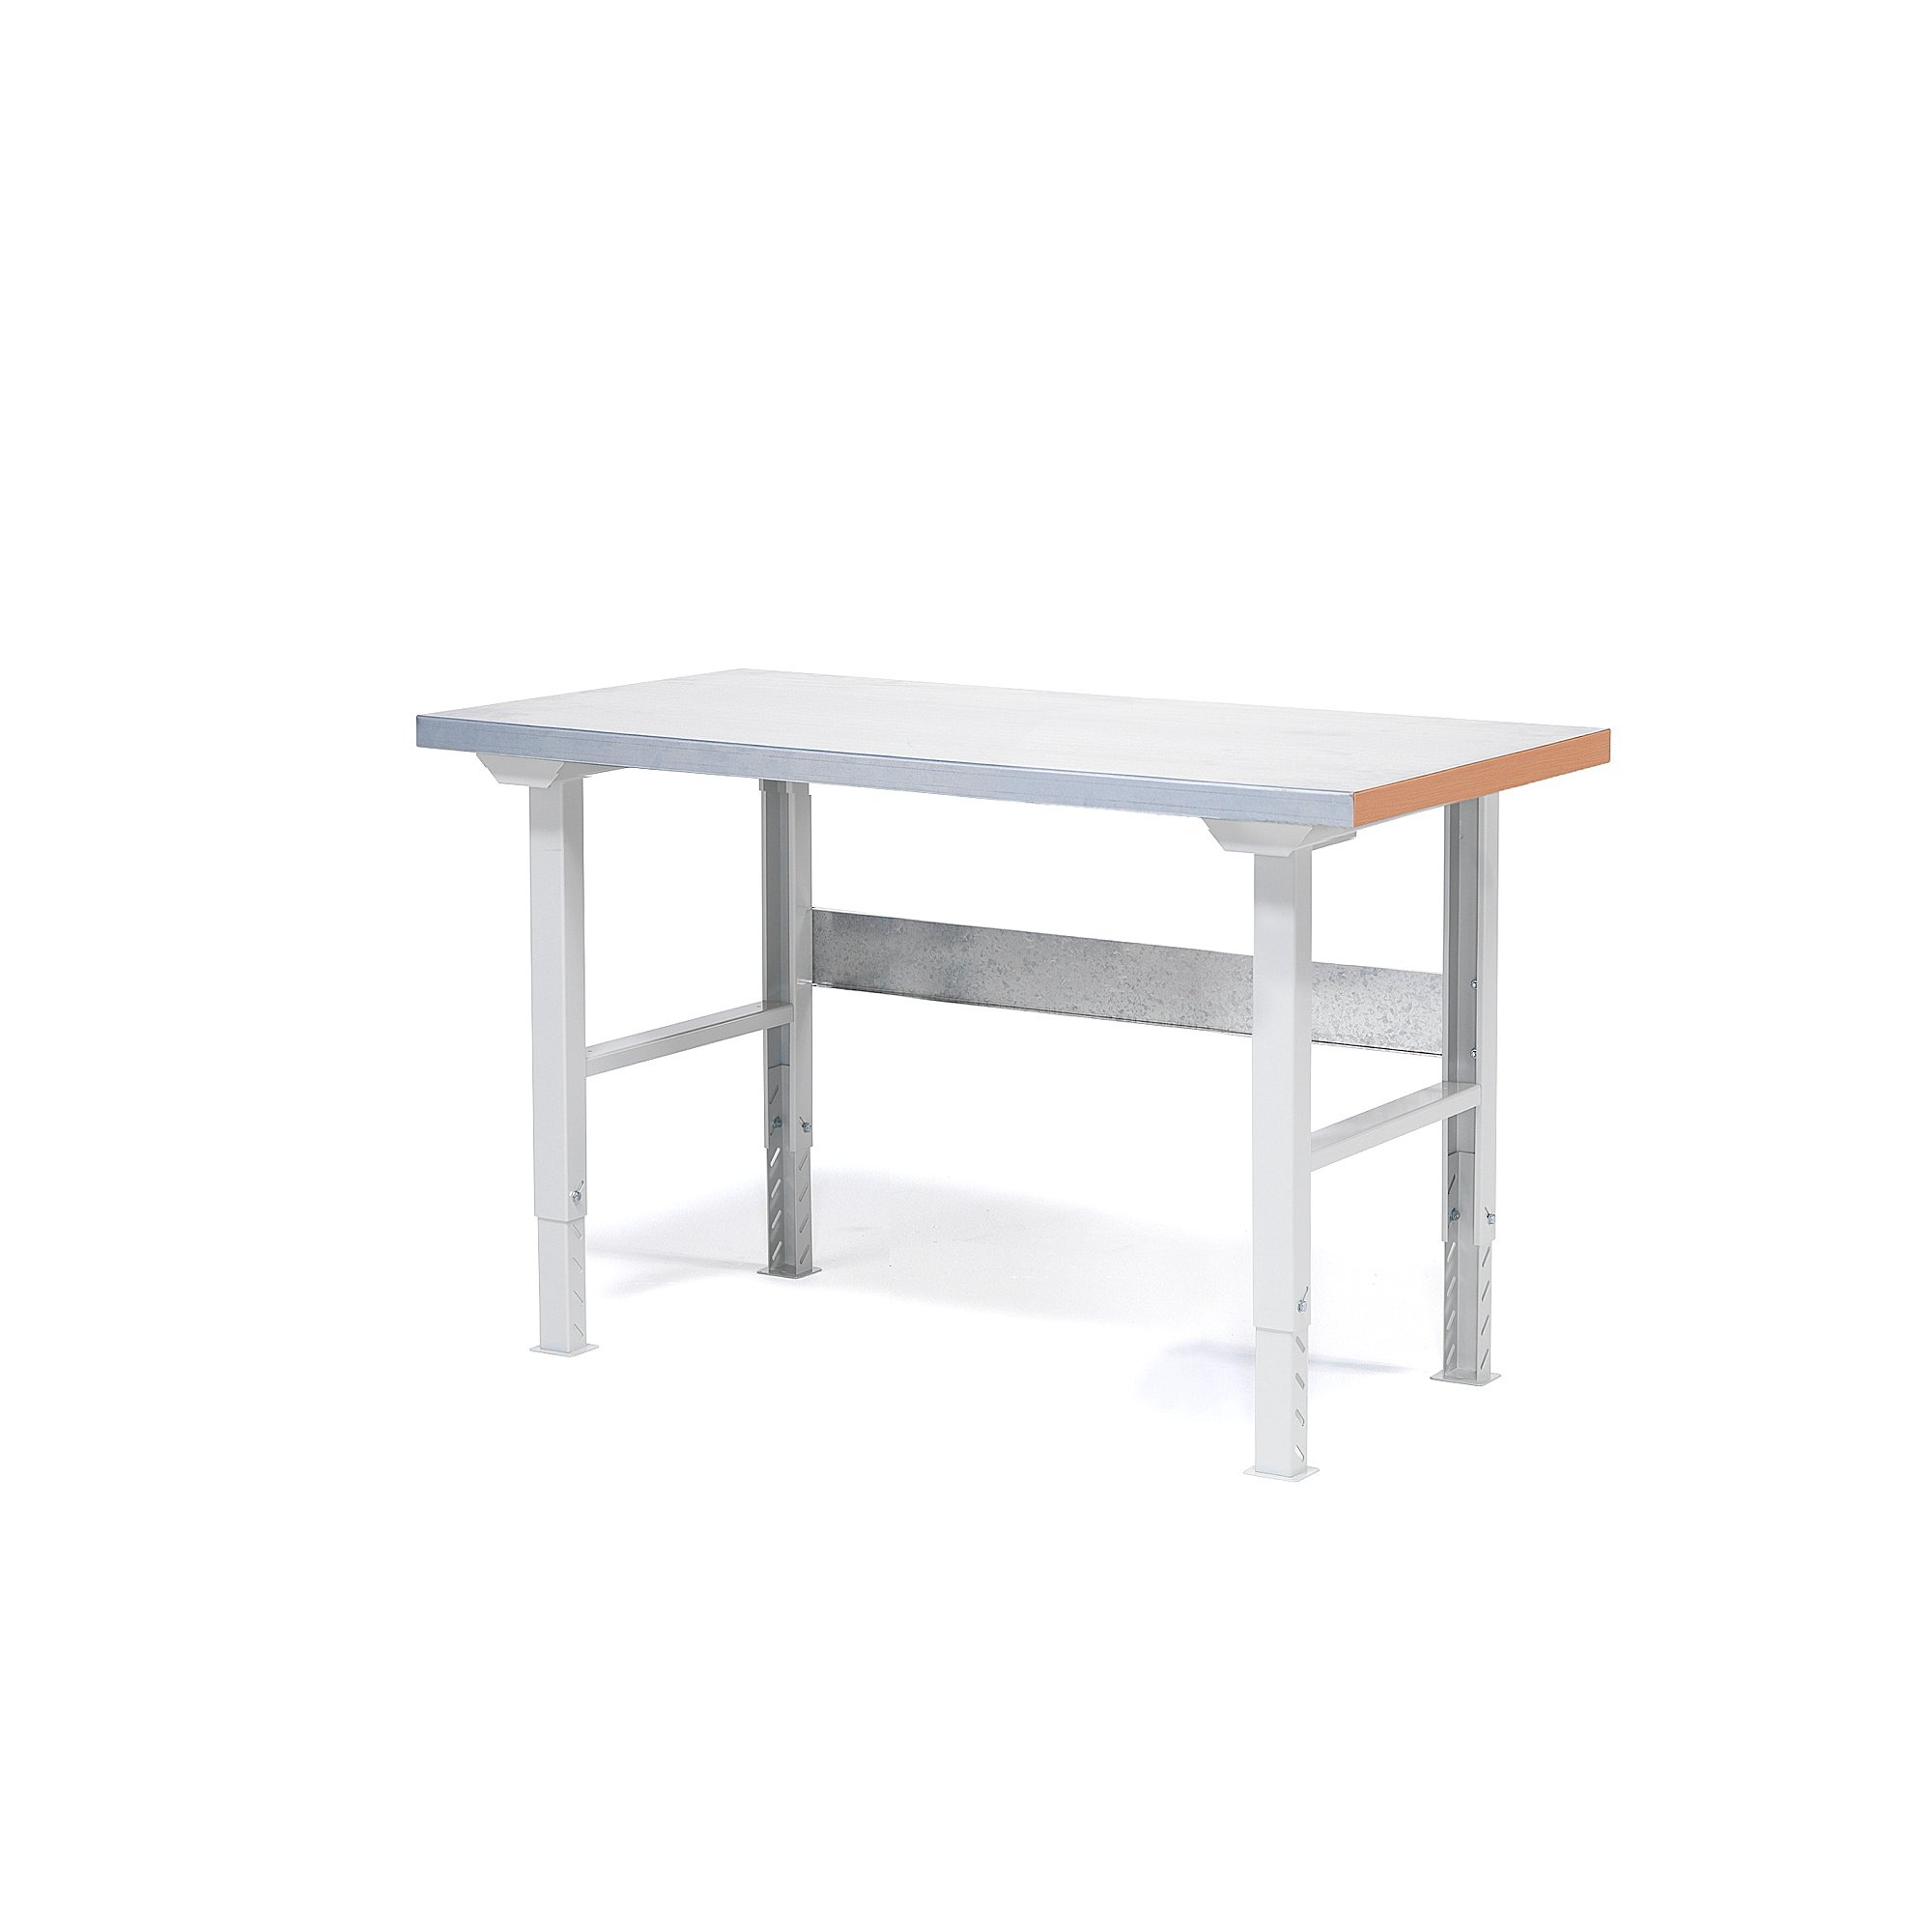 Dílenský stůl SOLID 750, 1500x800 mm, ocelový povrch